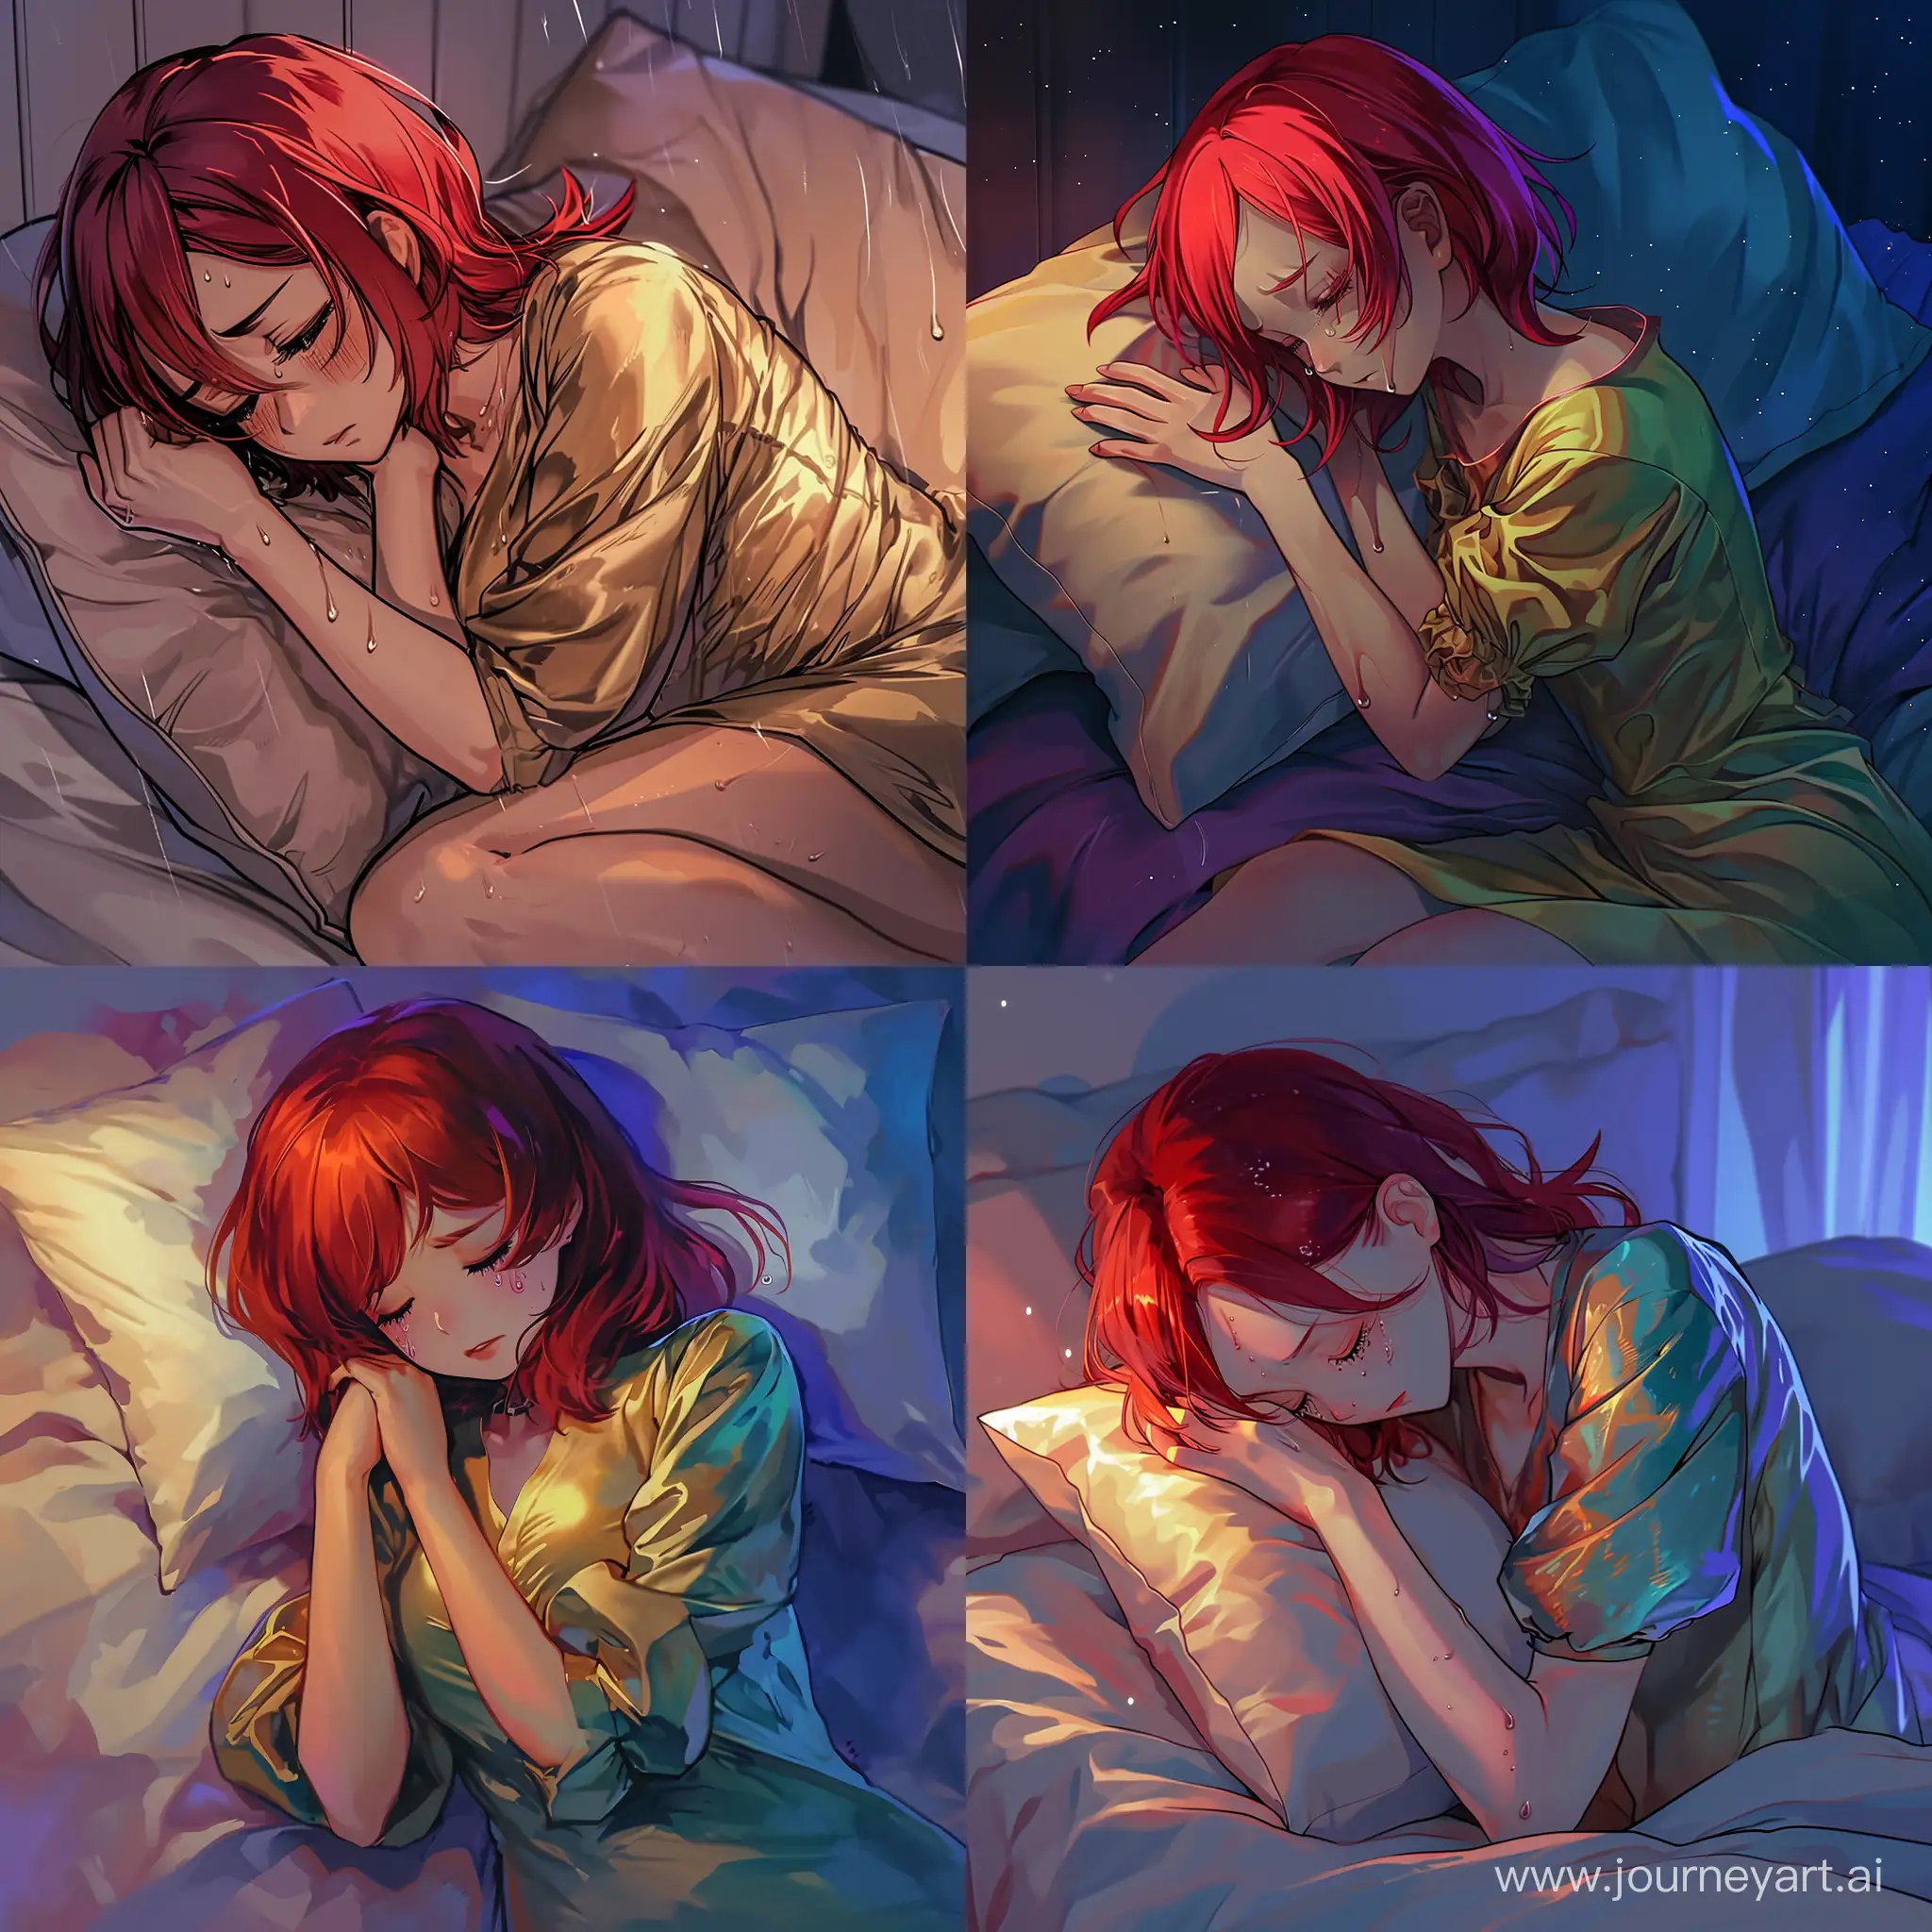 картинка в стиле цветного аниме, девушка 27 лет с рыжими волосами, в шелковой рубашке с декольте, лежит в кровати ночью, засыпая, она обнимает вторую подушку обеими руками и ногами, на глазах у нее слезинки, грустная атмосфера.